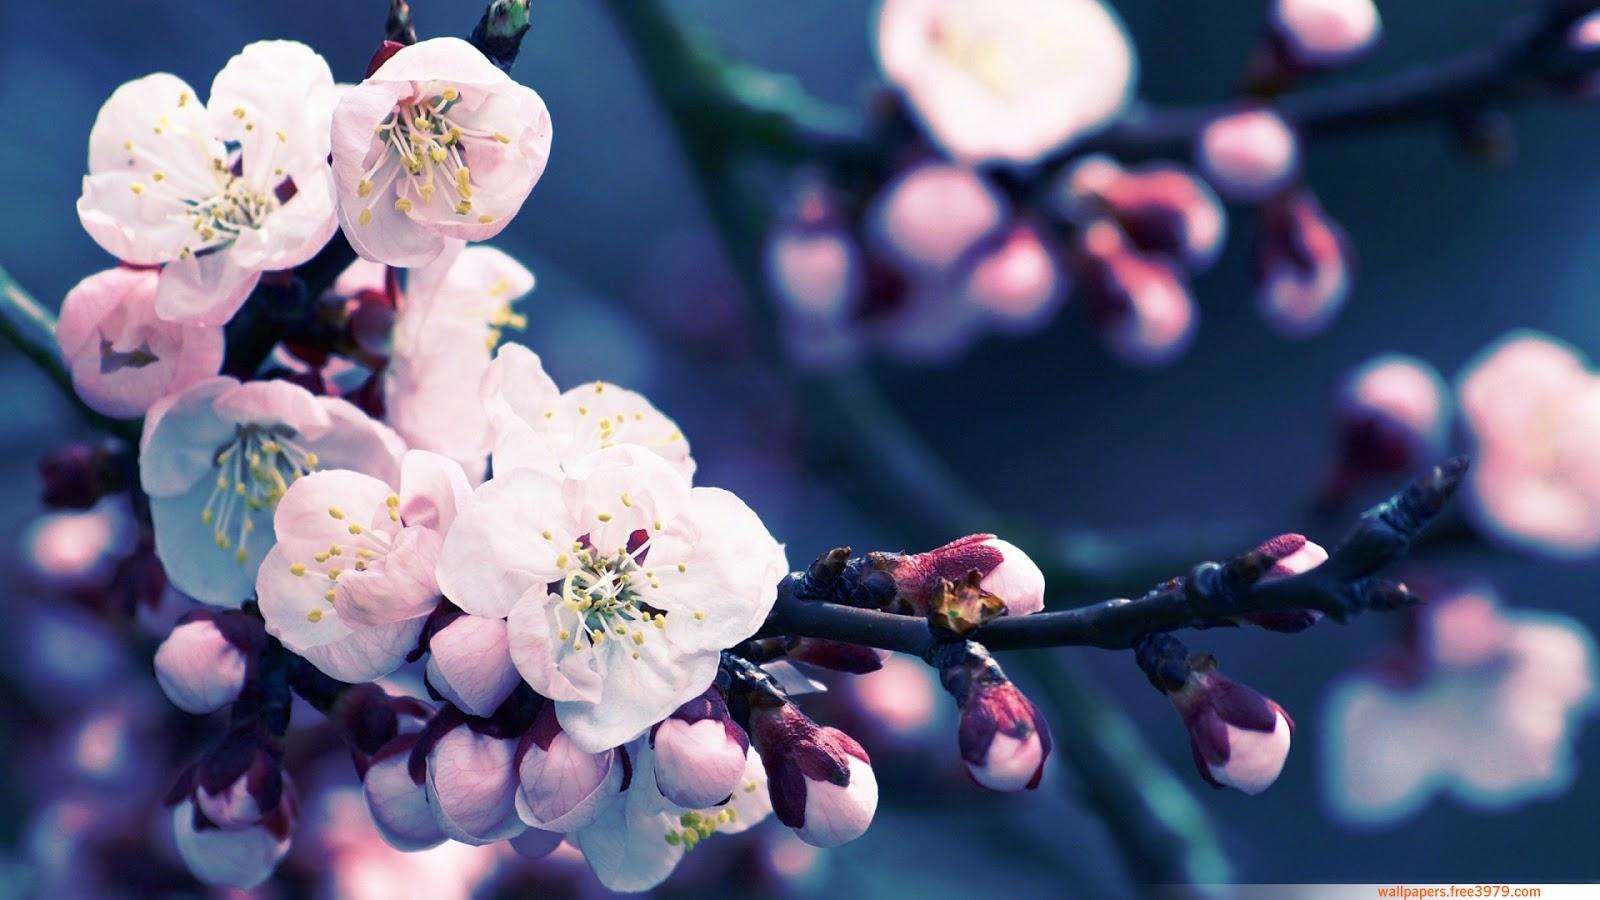 Wallpaper Wallpaper: Asian Cherry Blossom Flower